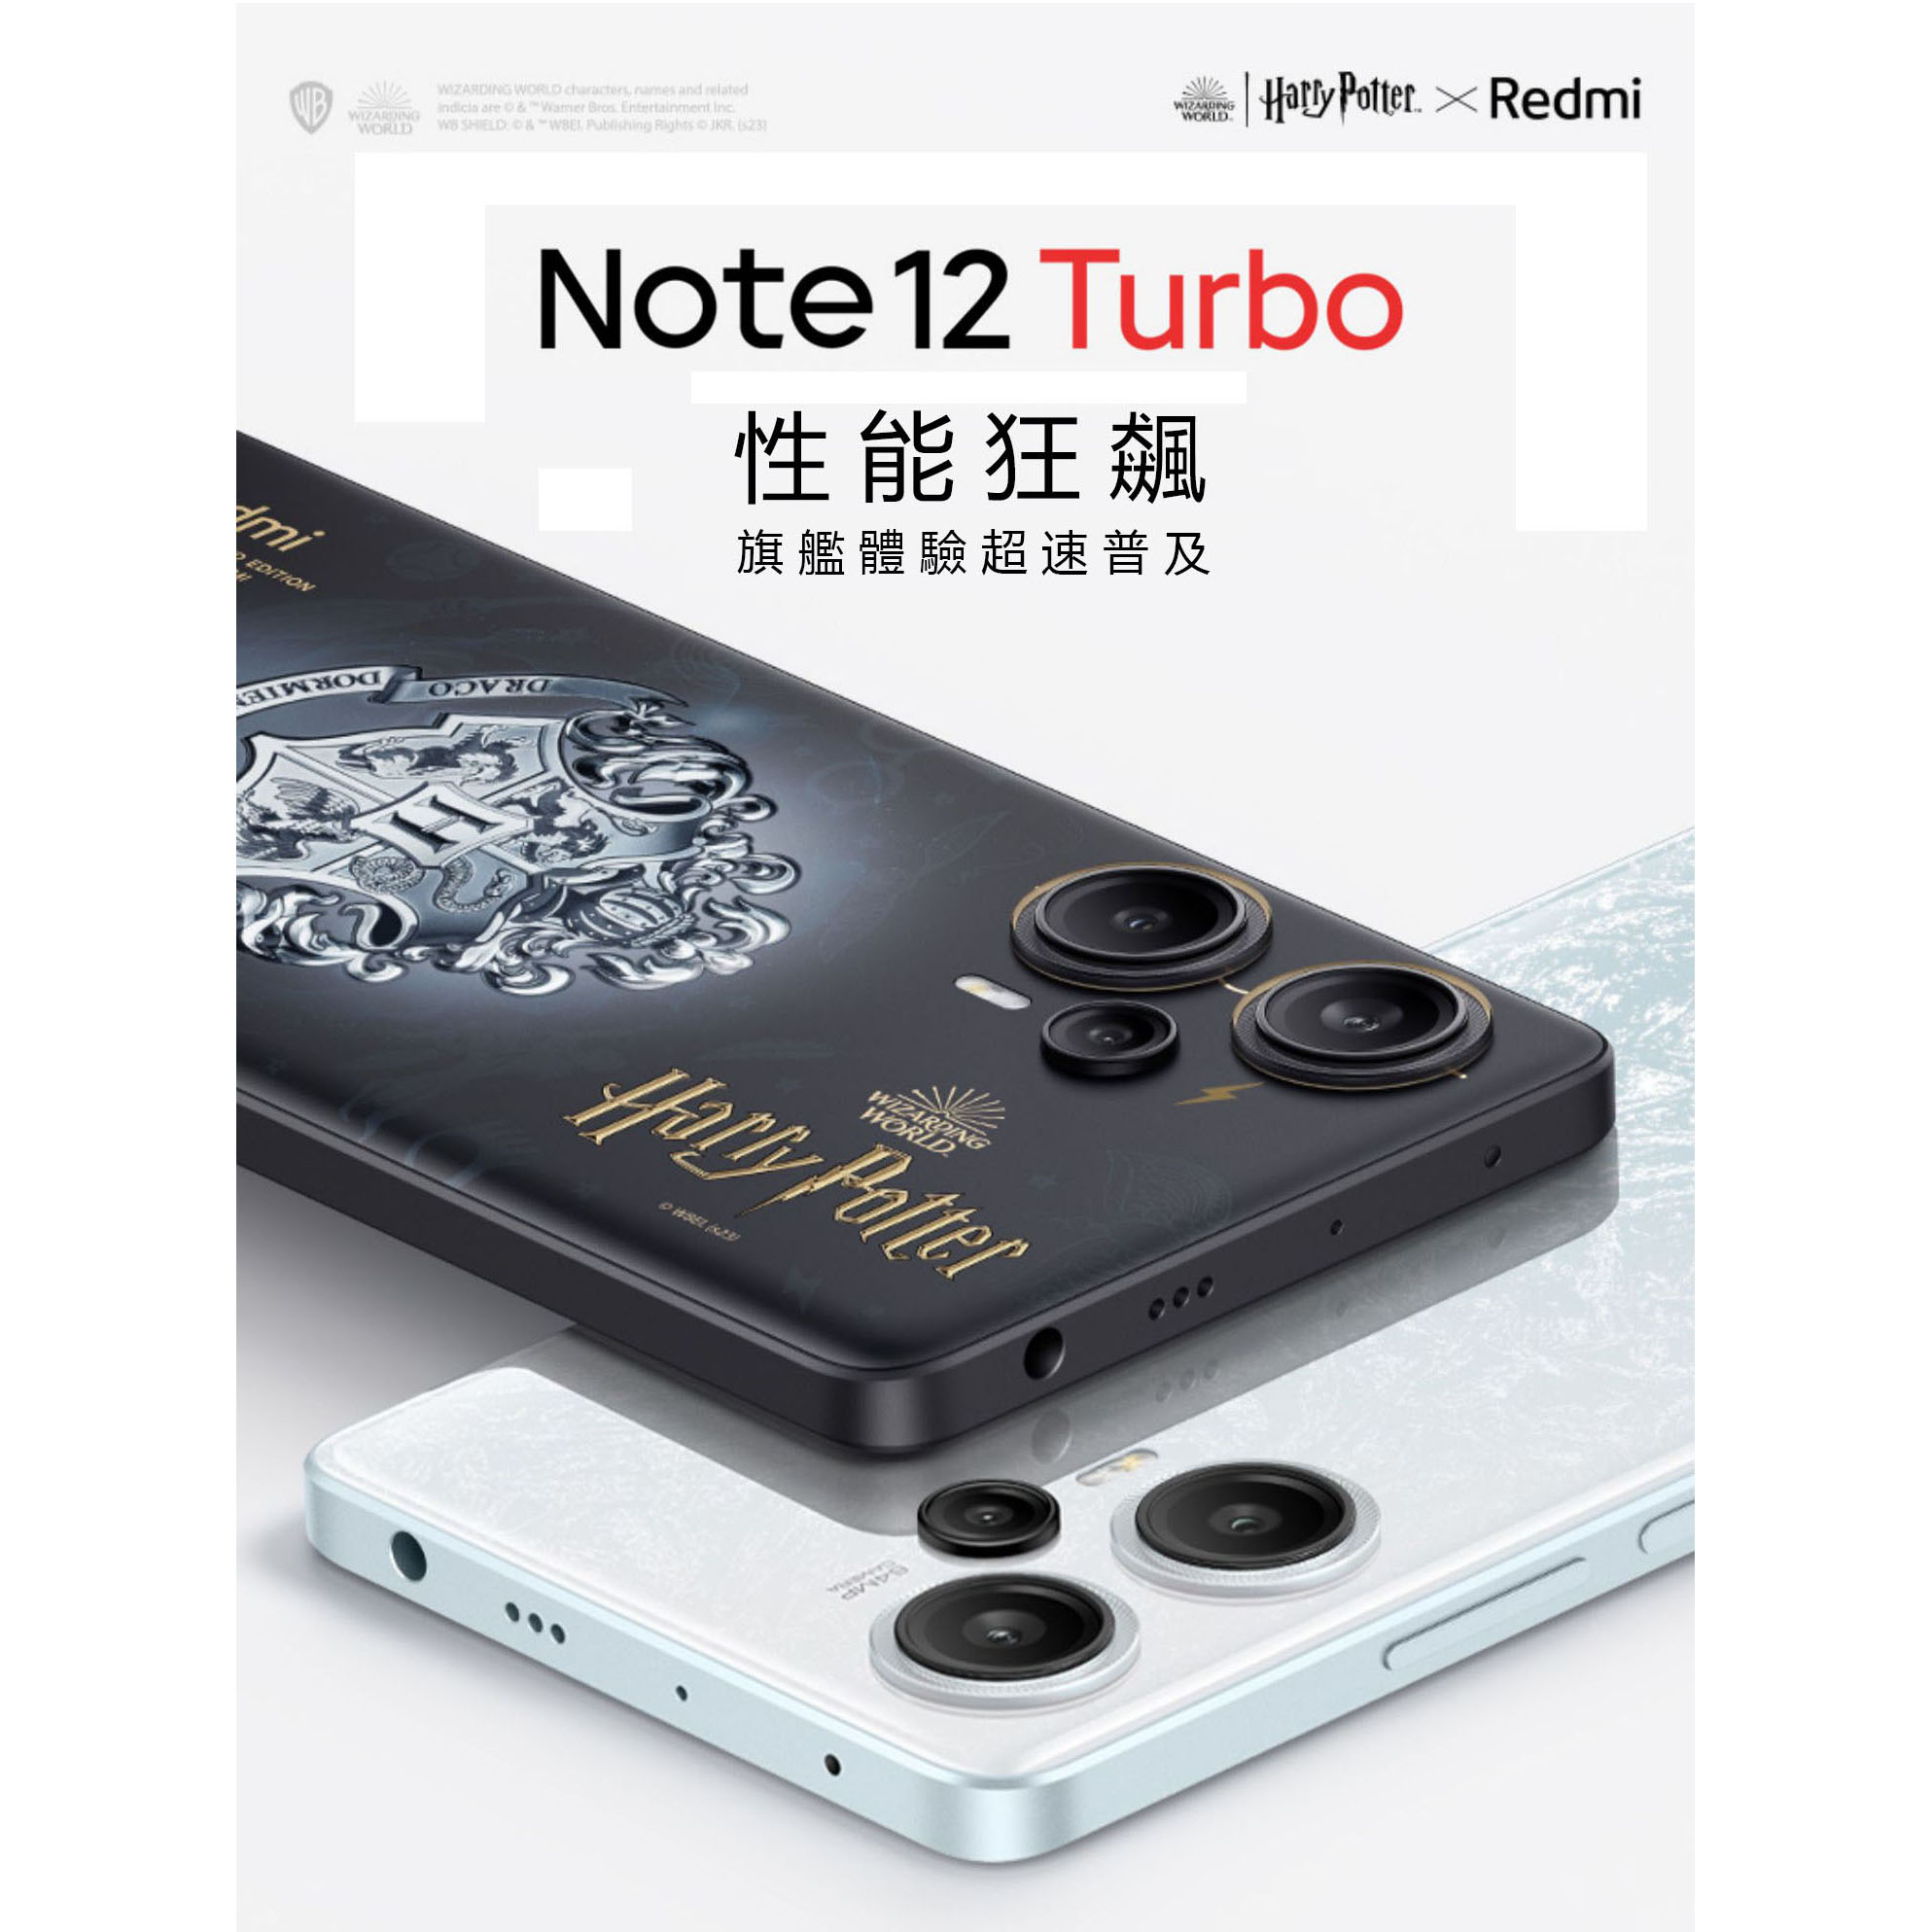 小米/Redmi Note 12 Turbo手機新品紅米note12Turbo 性能小金剛性能狂飆